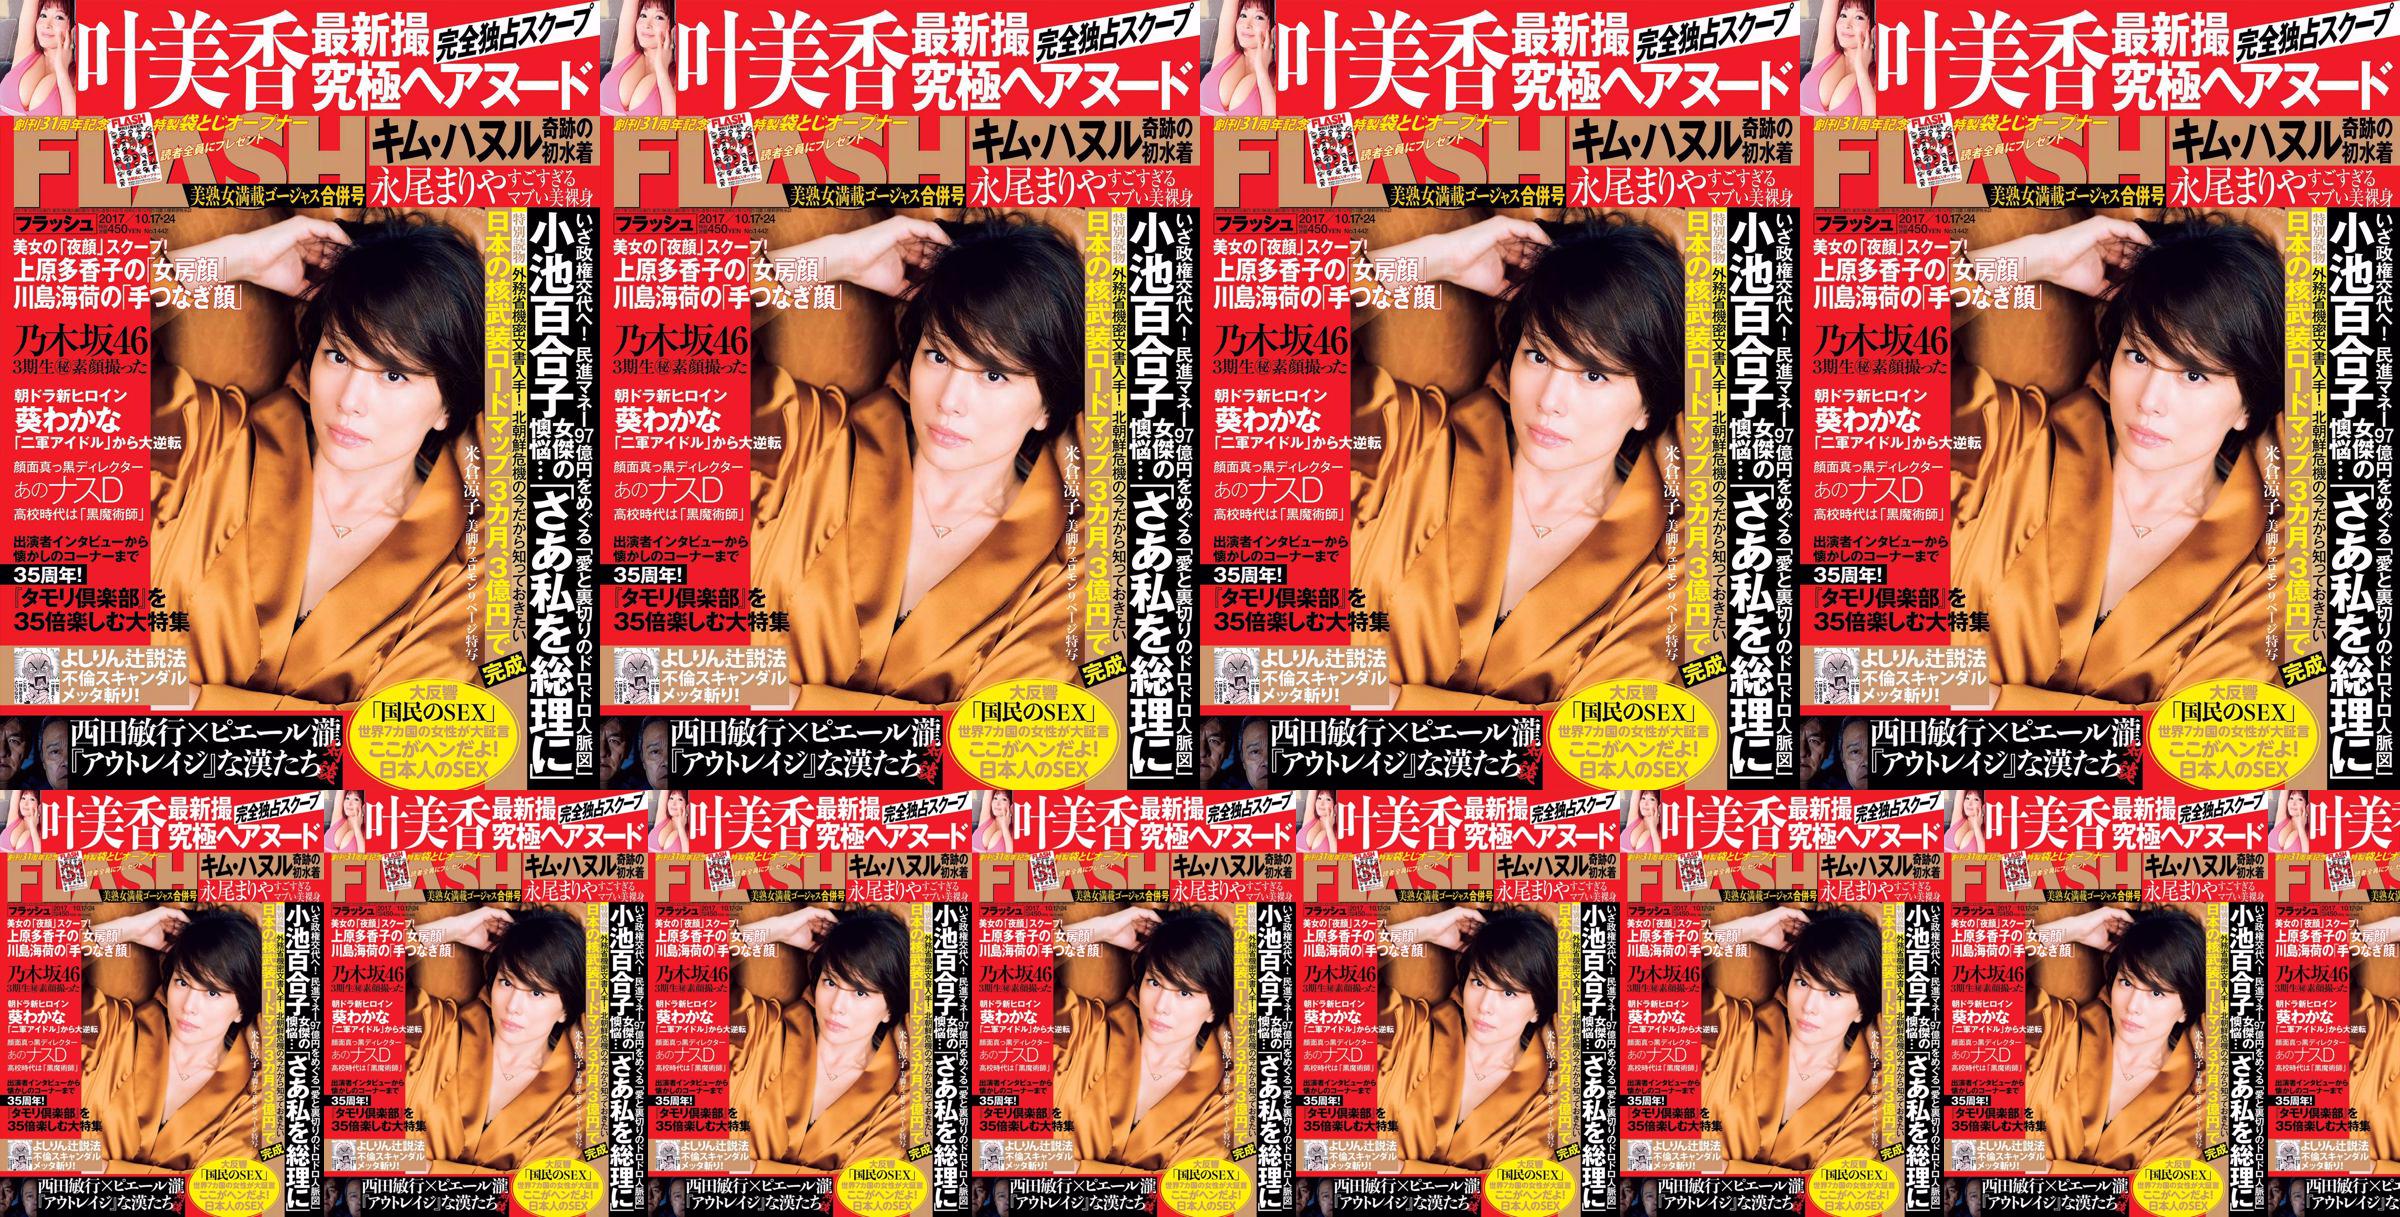 [FLASH] Yonekura Ryoko Ye Meixiang Tachibana Hoa Rin Nagao Rika 2017. 10.17-24 Tạp chí ảnh No.29776b Trang 1